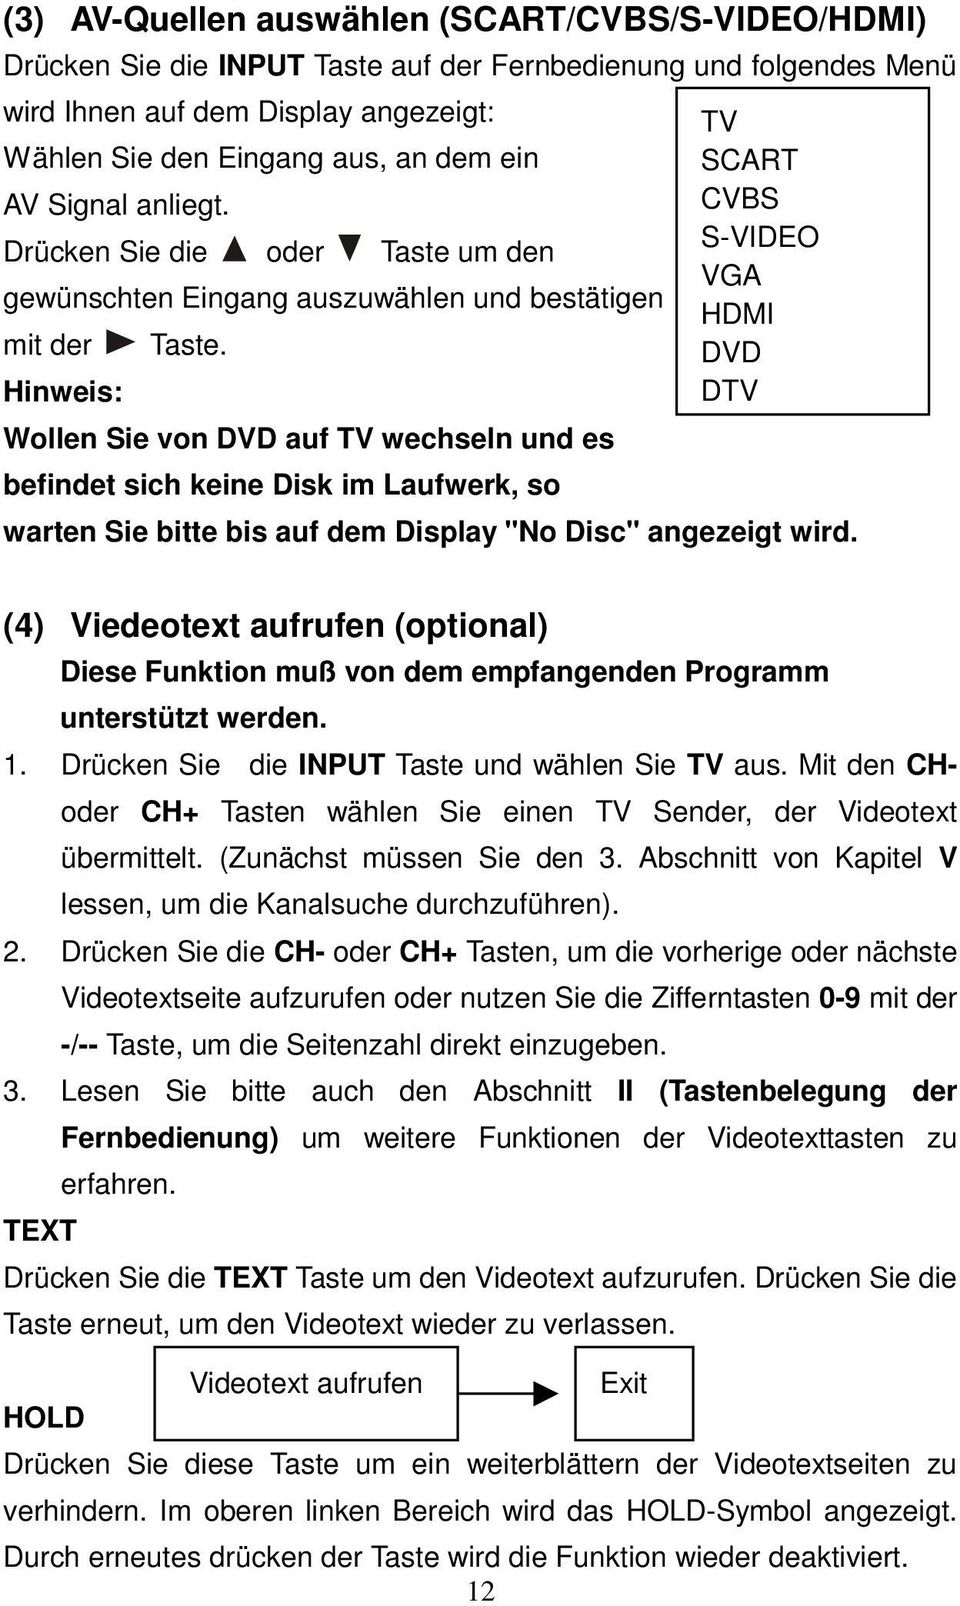 Wollen Sie von DVD auf TV wechseln und es befindet sich keine Disk im Laufwerk, so TV SCART CVBS S-VIDEO VGA HDMI DVD DTV warten Sie bitte bis auf dem Display "No Disc" angezeigt wird.